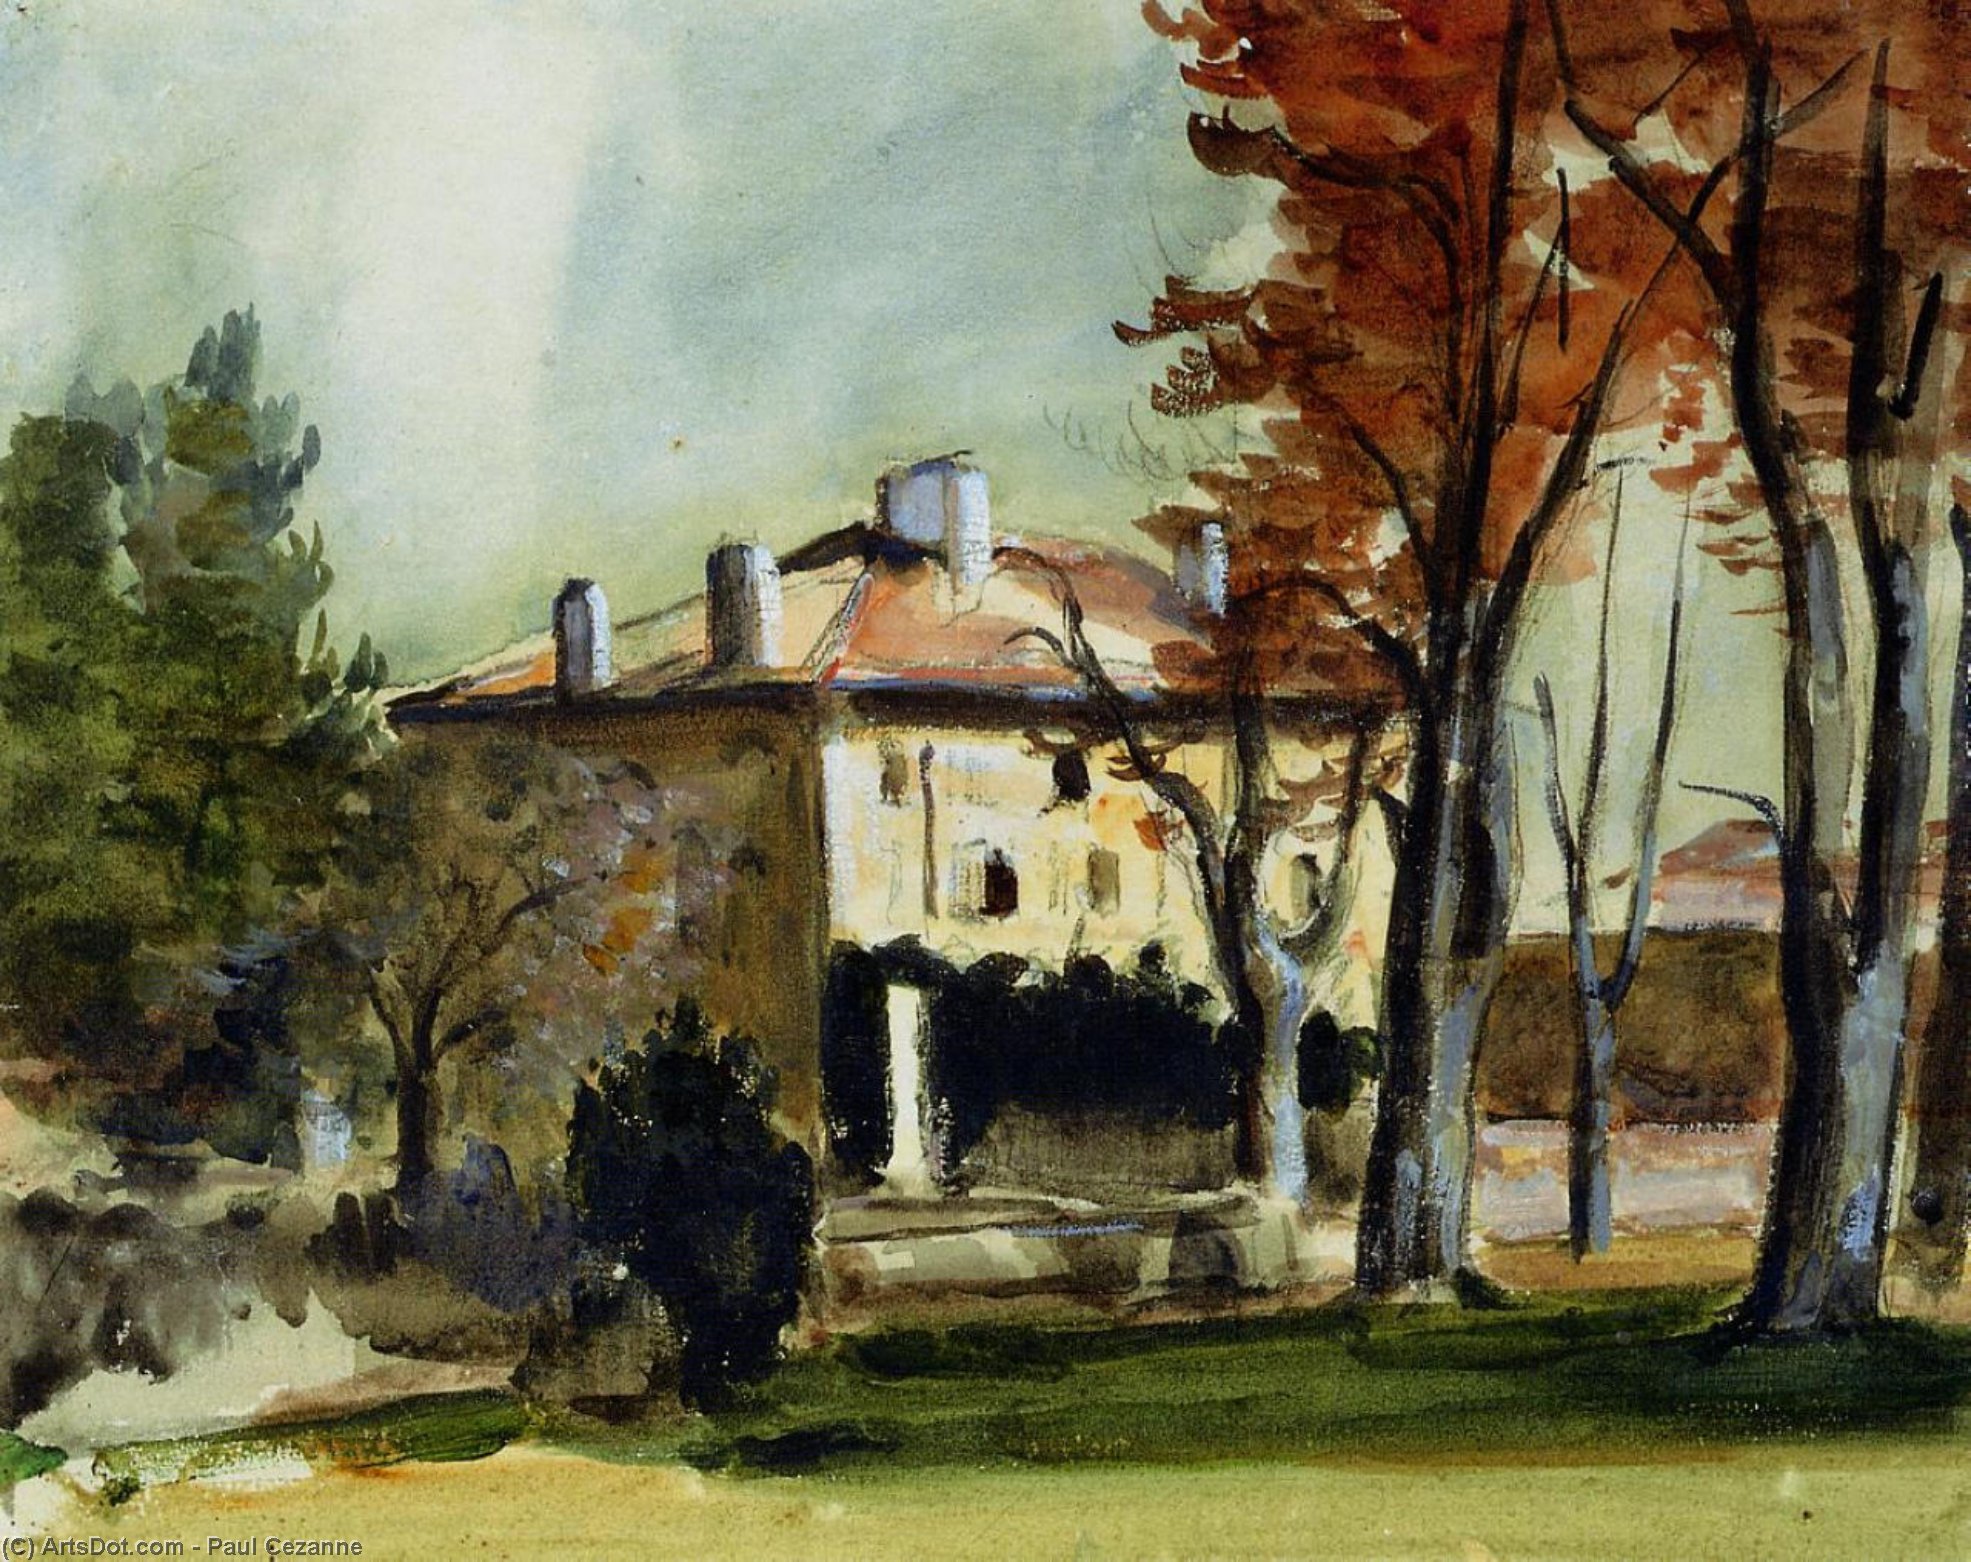 WikiOO.org - Encyclopedia of Fine Arts - Malba, Artwork Paul Cezanne - The Manor House at Jas de Bouffan